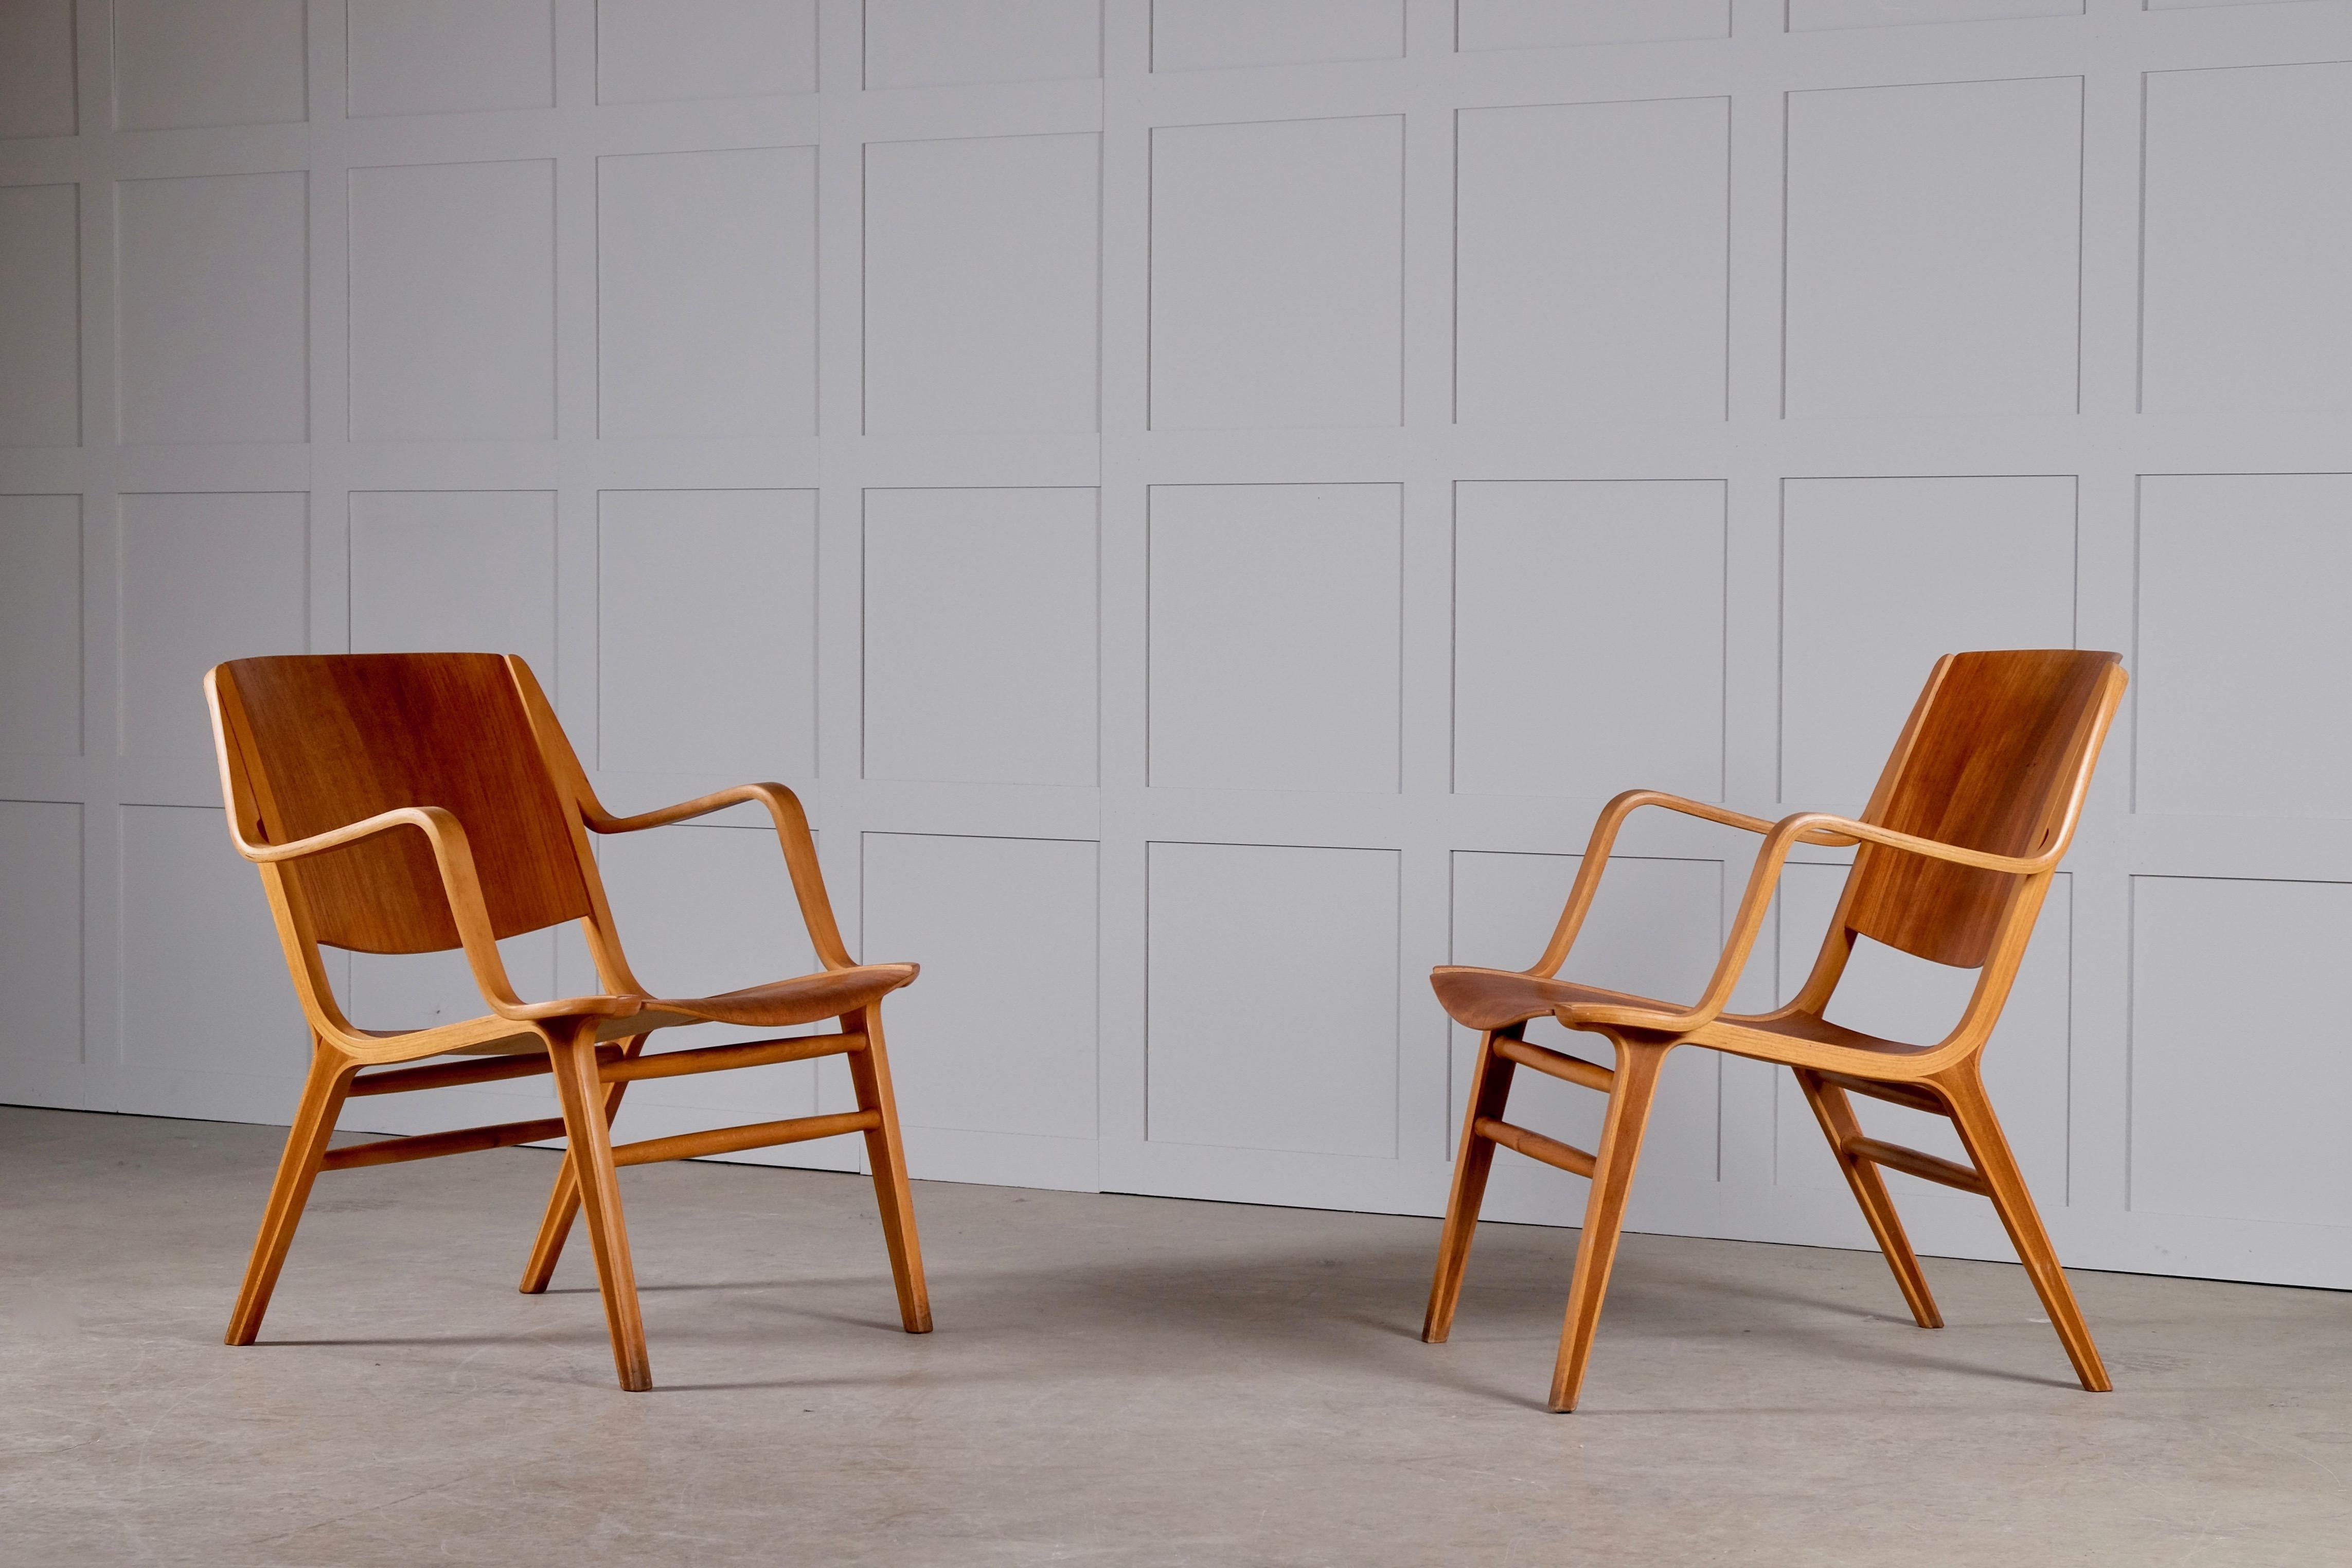 Sehr guter Zustand. Produziert von Fritz Hansen, 1950er Jahre.
Ein Beispiel für diesen Stuhl befindet sich im Museum für Design in Kopenhagen, Dänemark.